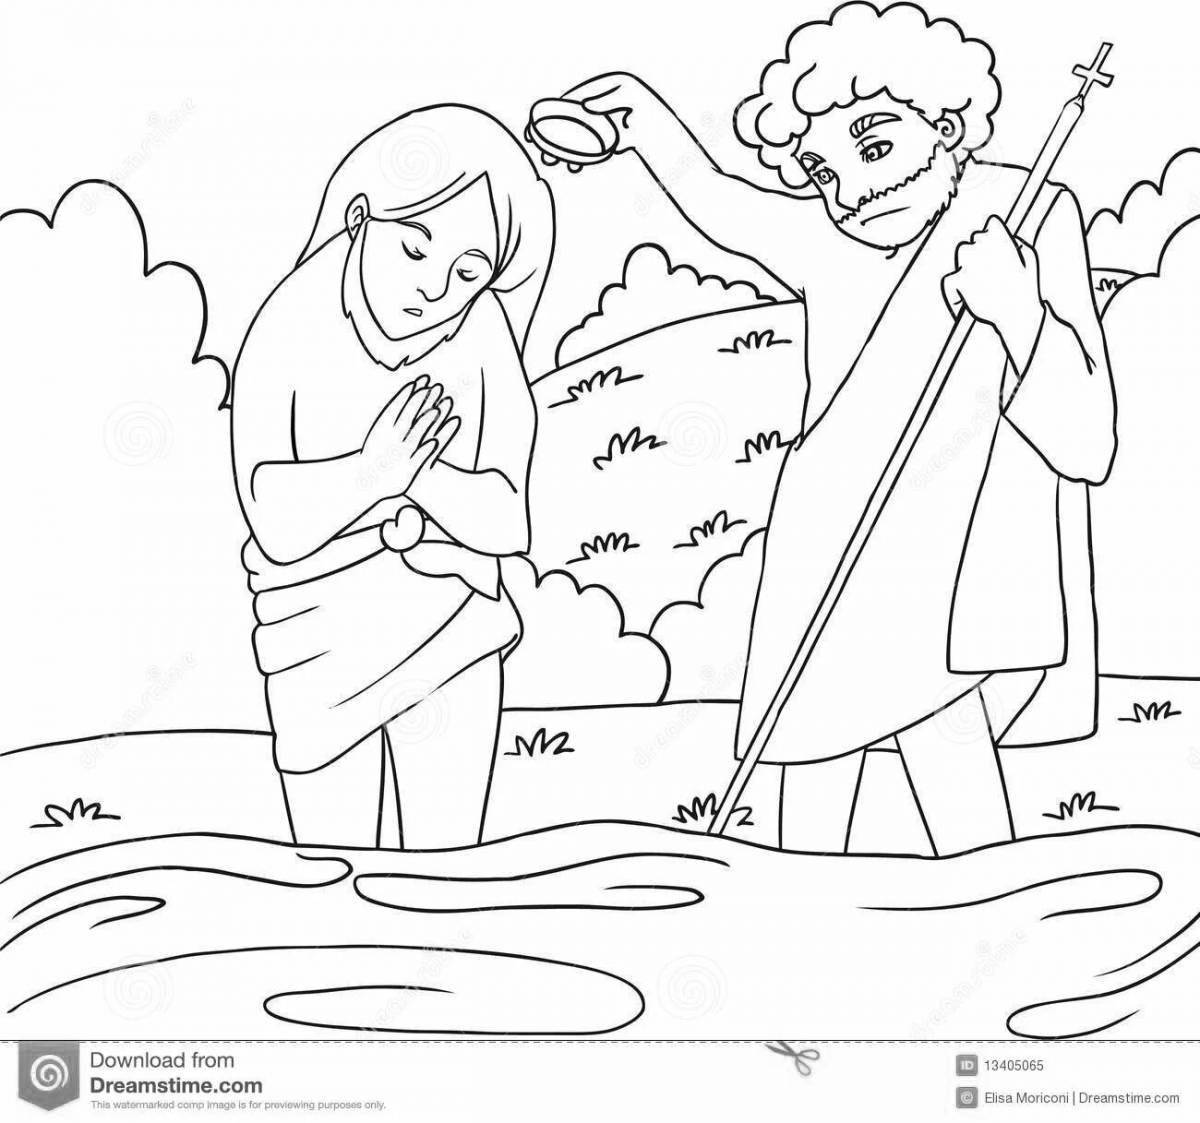 Детские рисунки крещение Господне простые